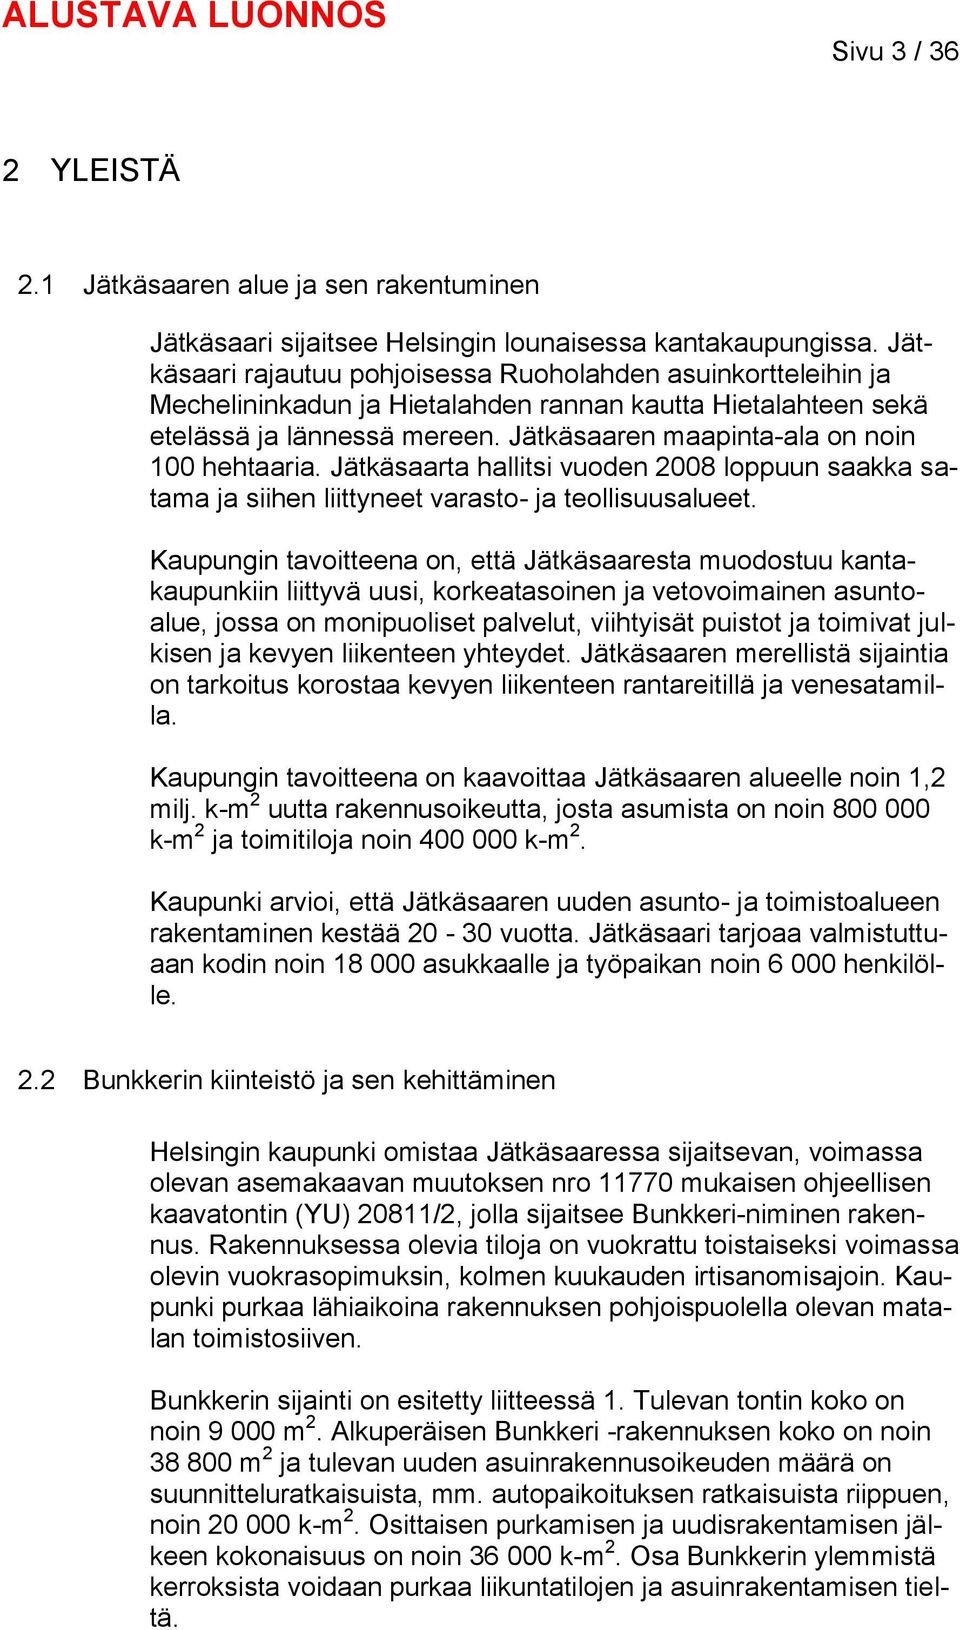 Jätkäsaaren maapinta-ala on noin 100 hehtaaria. Jätkäsaarta hallitsi vuoden 2008 loppuun saakka satama ja siihen liittyneet varasto- ja teollisuusalueet.